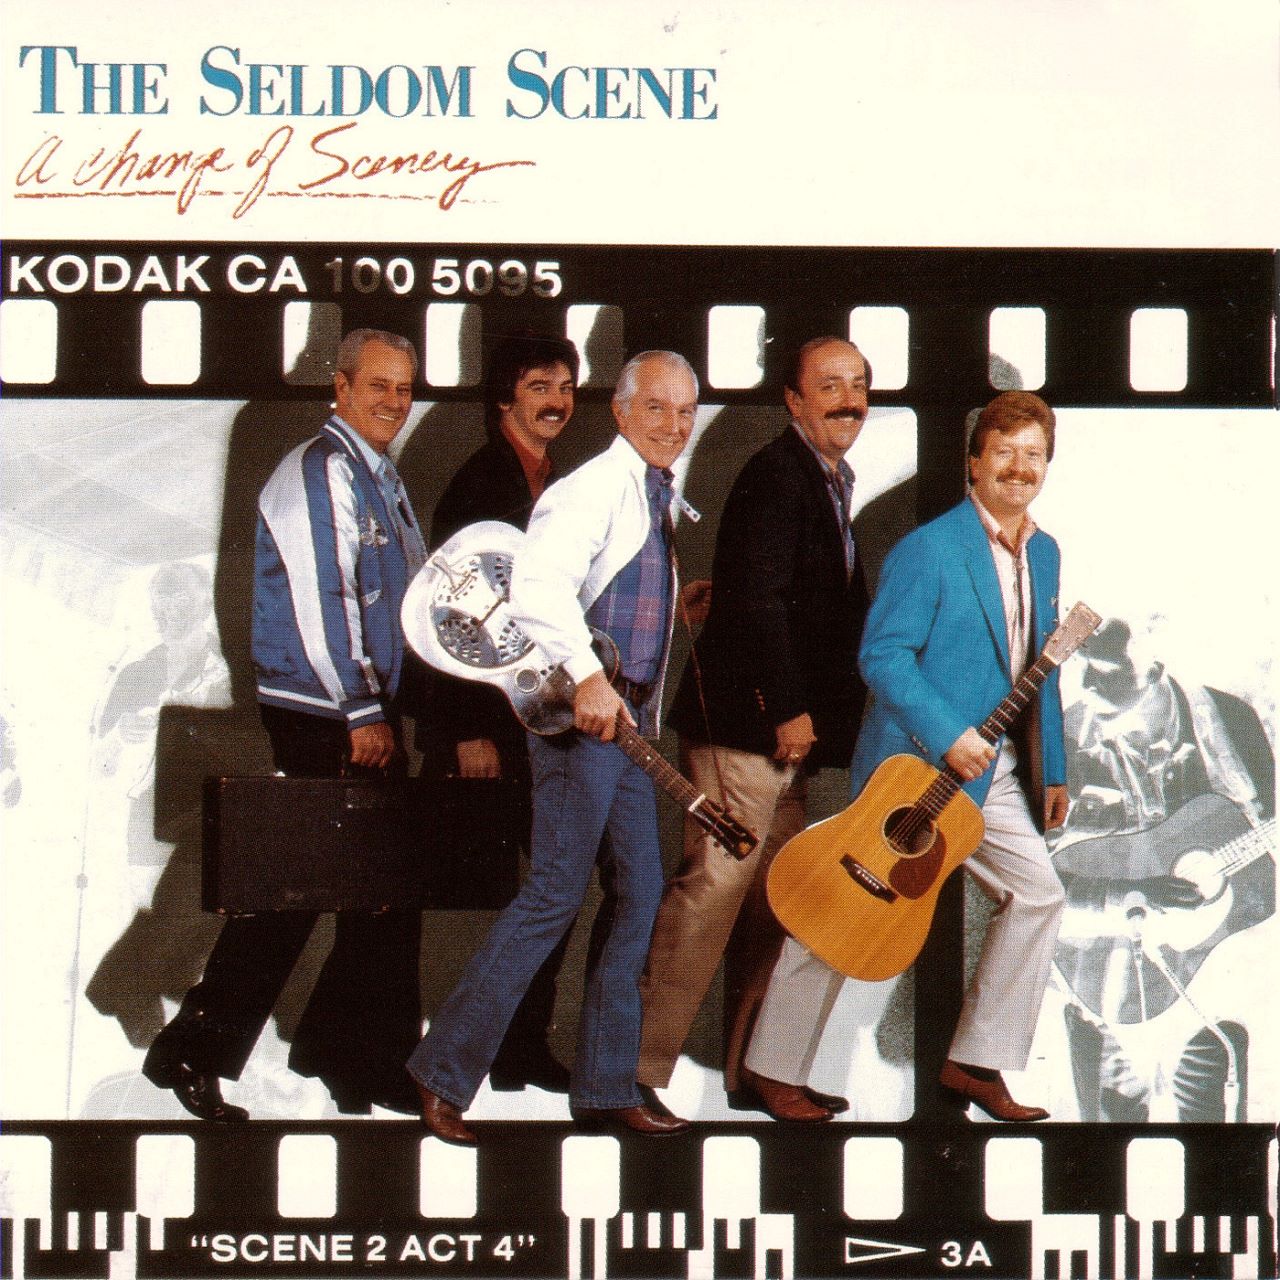 Seldom Scene - A Change Of Scenery cover album